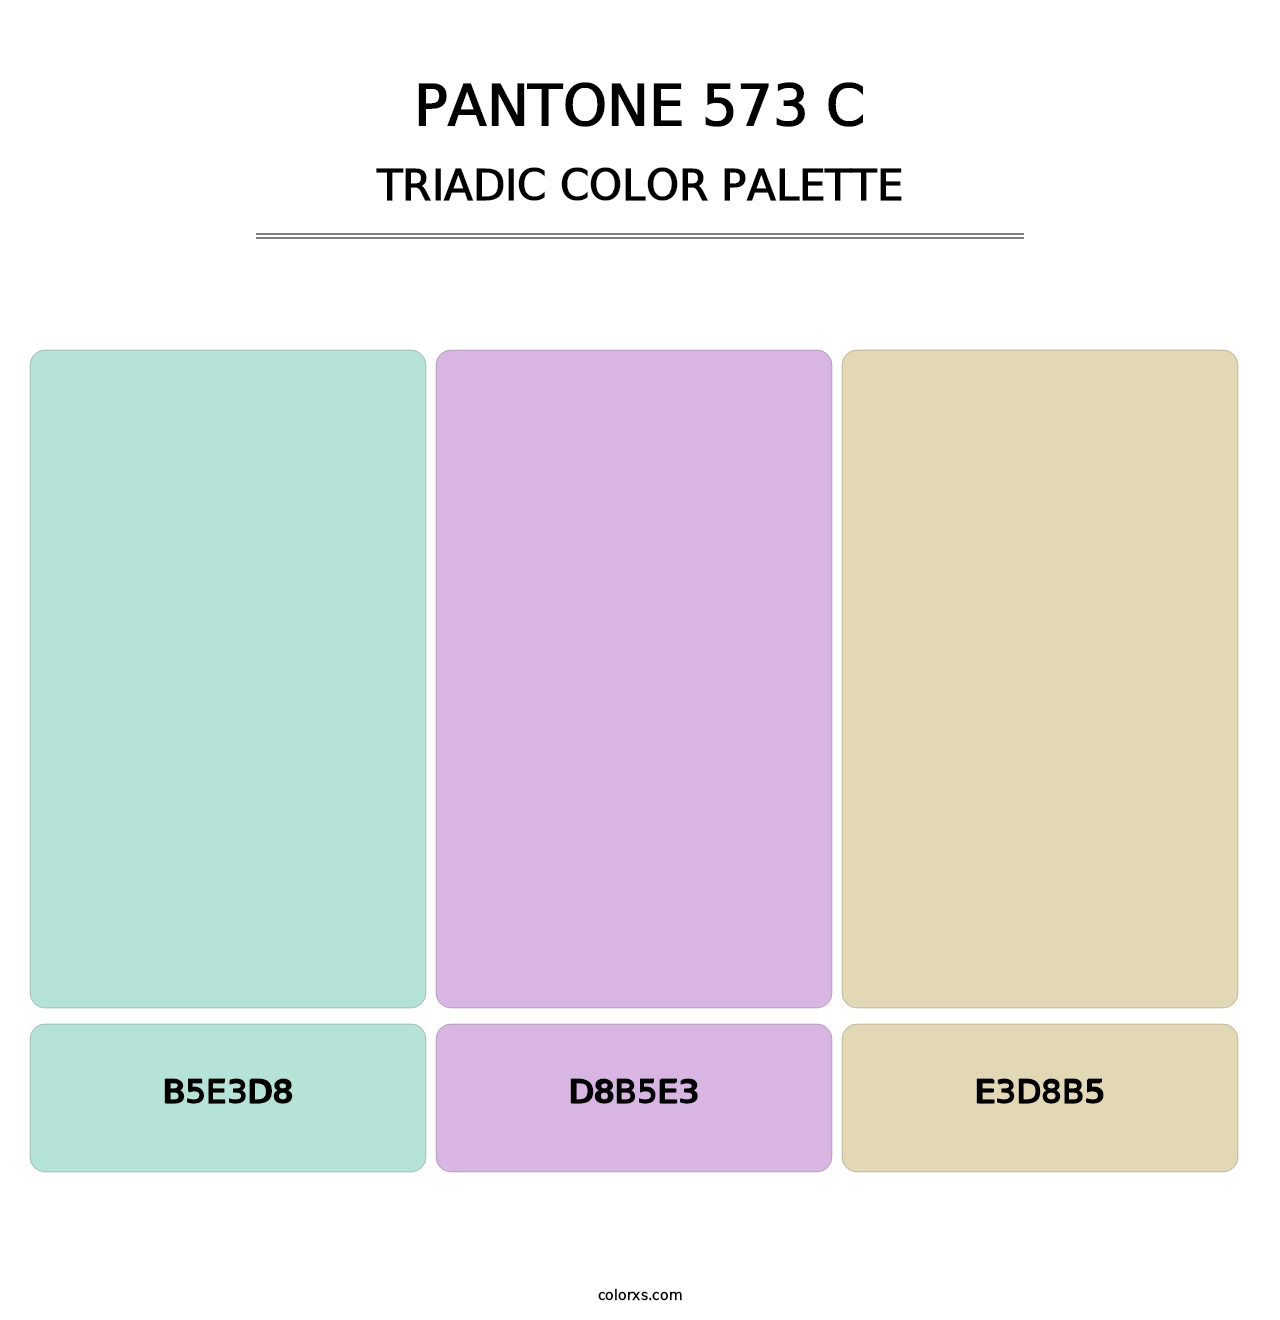 PANTONE 573 C - Triadic Color Palette